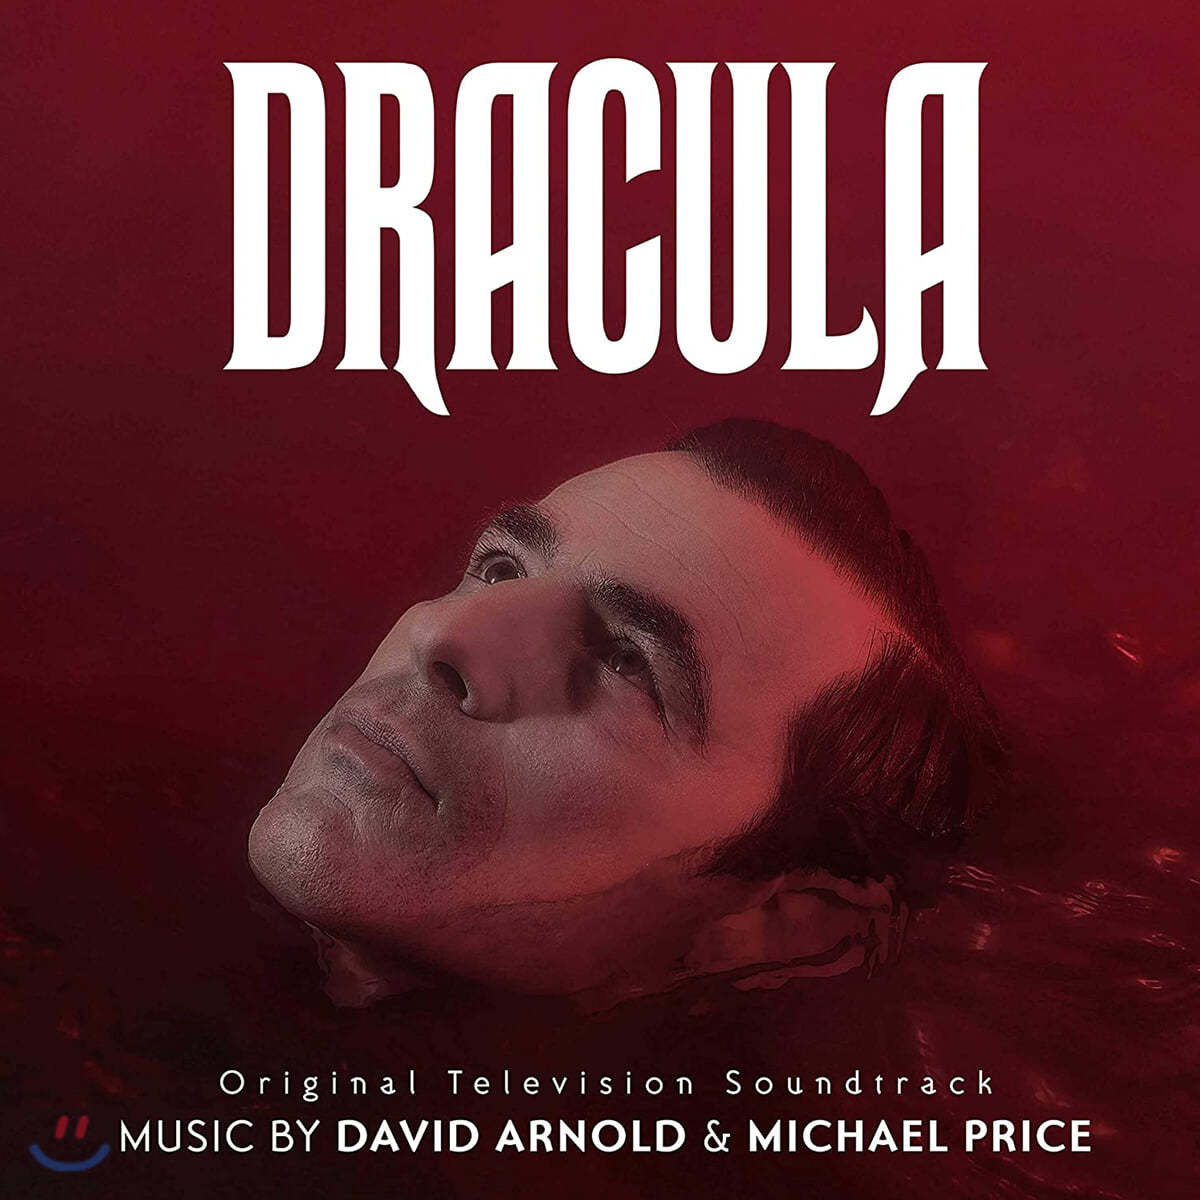 BBC/Netflix &#39;드라큘라&#39; 드라마 음악 (Dracula OST by David Arnold &amp; Michael Price 데이비드 아널드 &amp; 마이클 프라이스) 